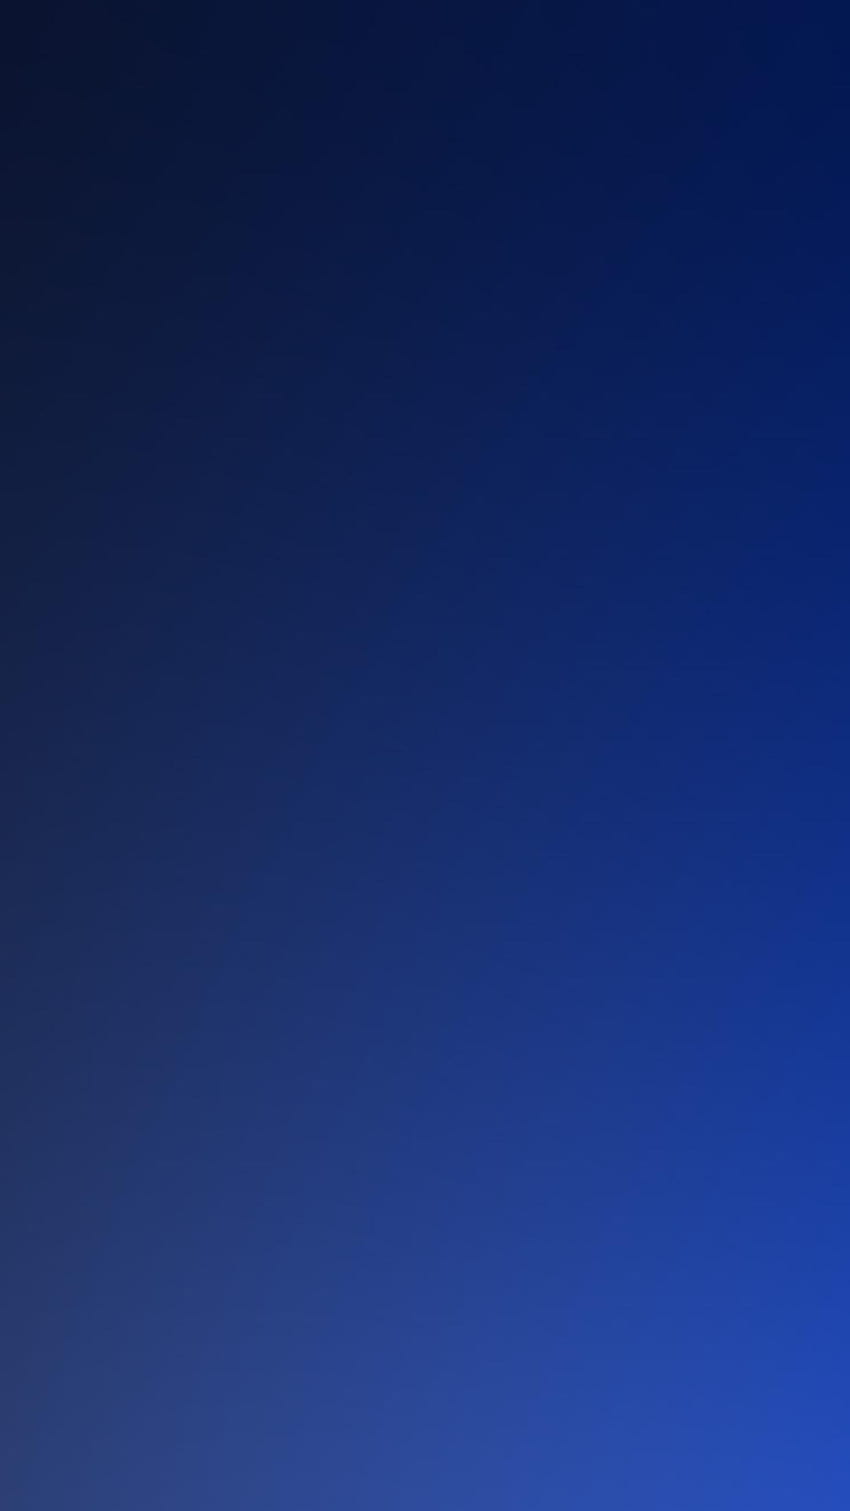 Pure Dark Blue Ocean Gradation Blur Backgrounds, cellulare blu scuro Sfondo del telefono HD